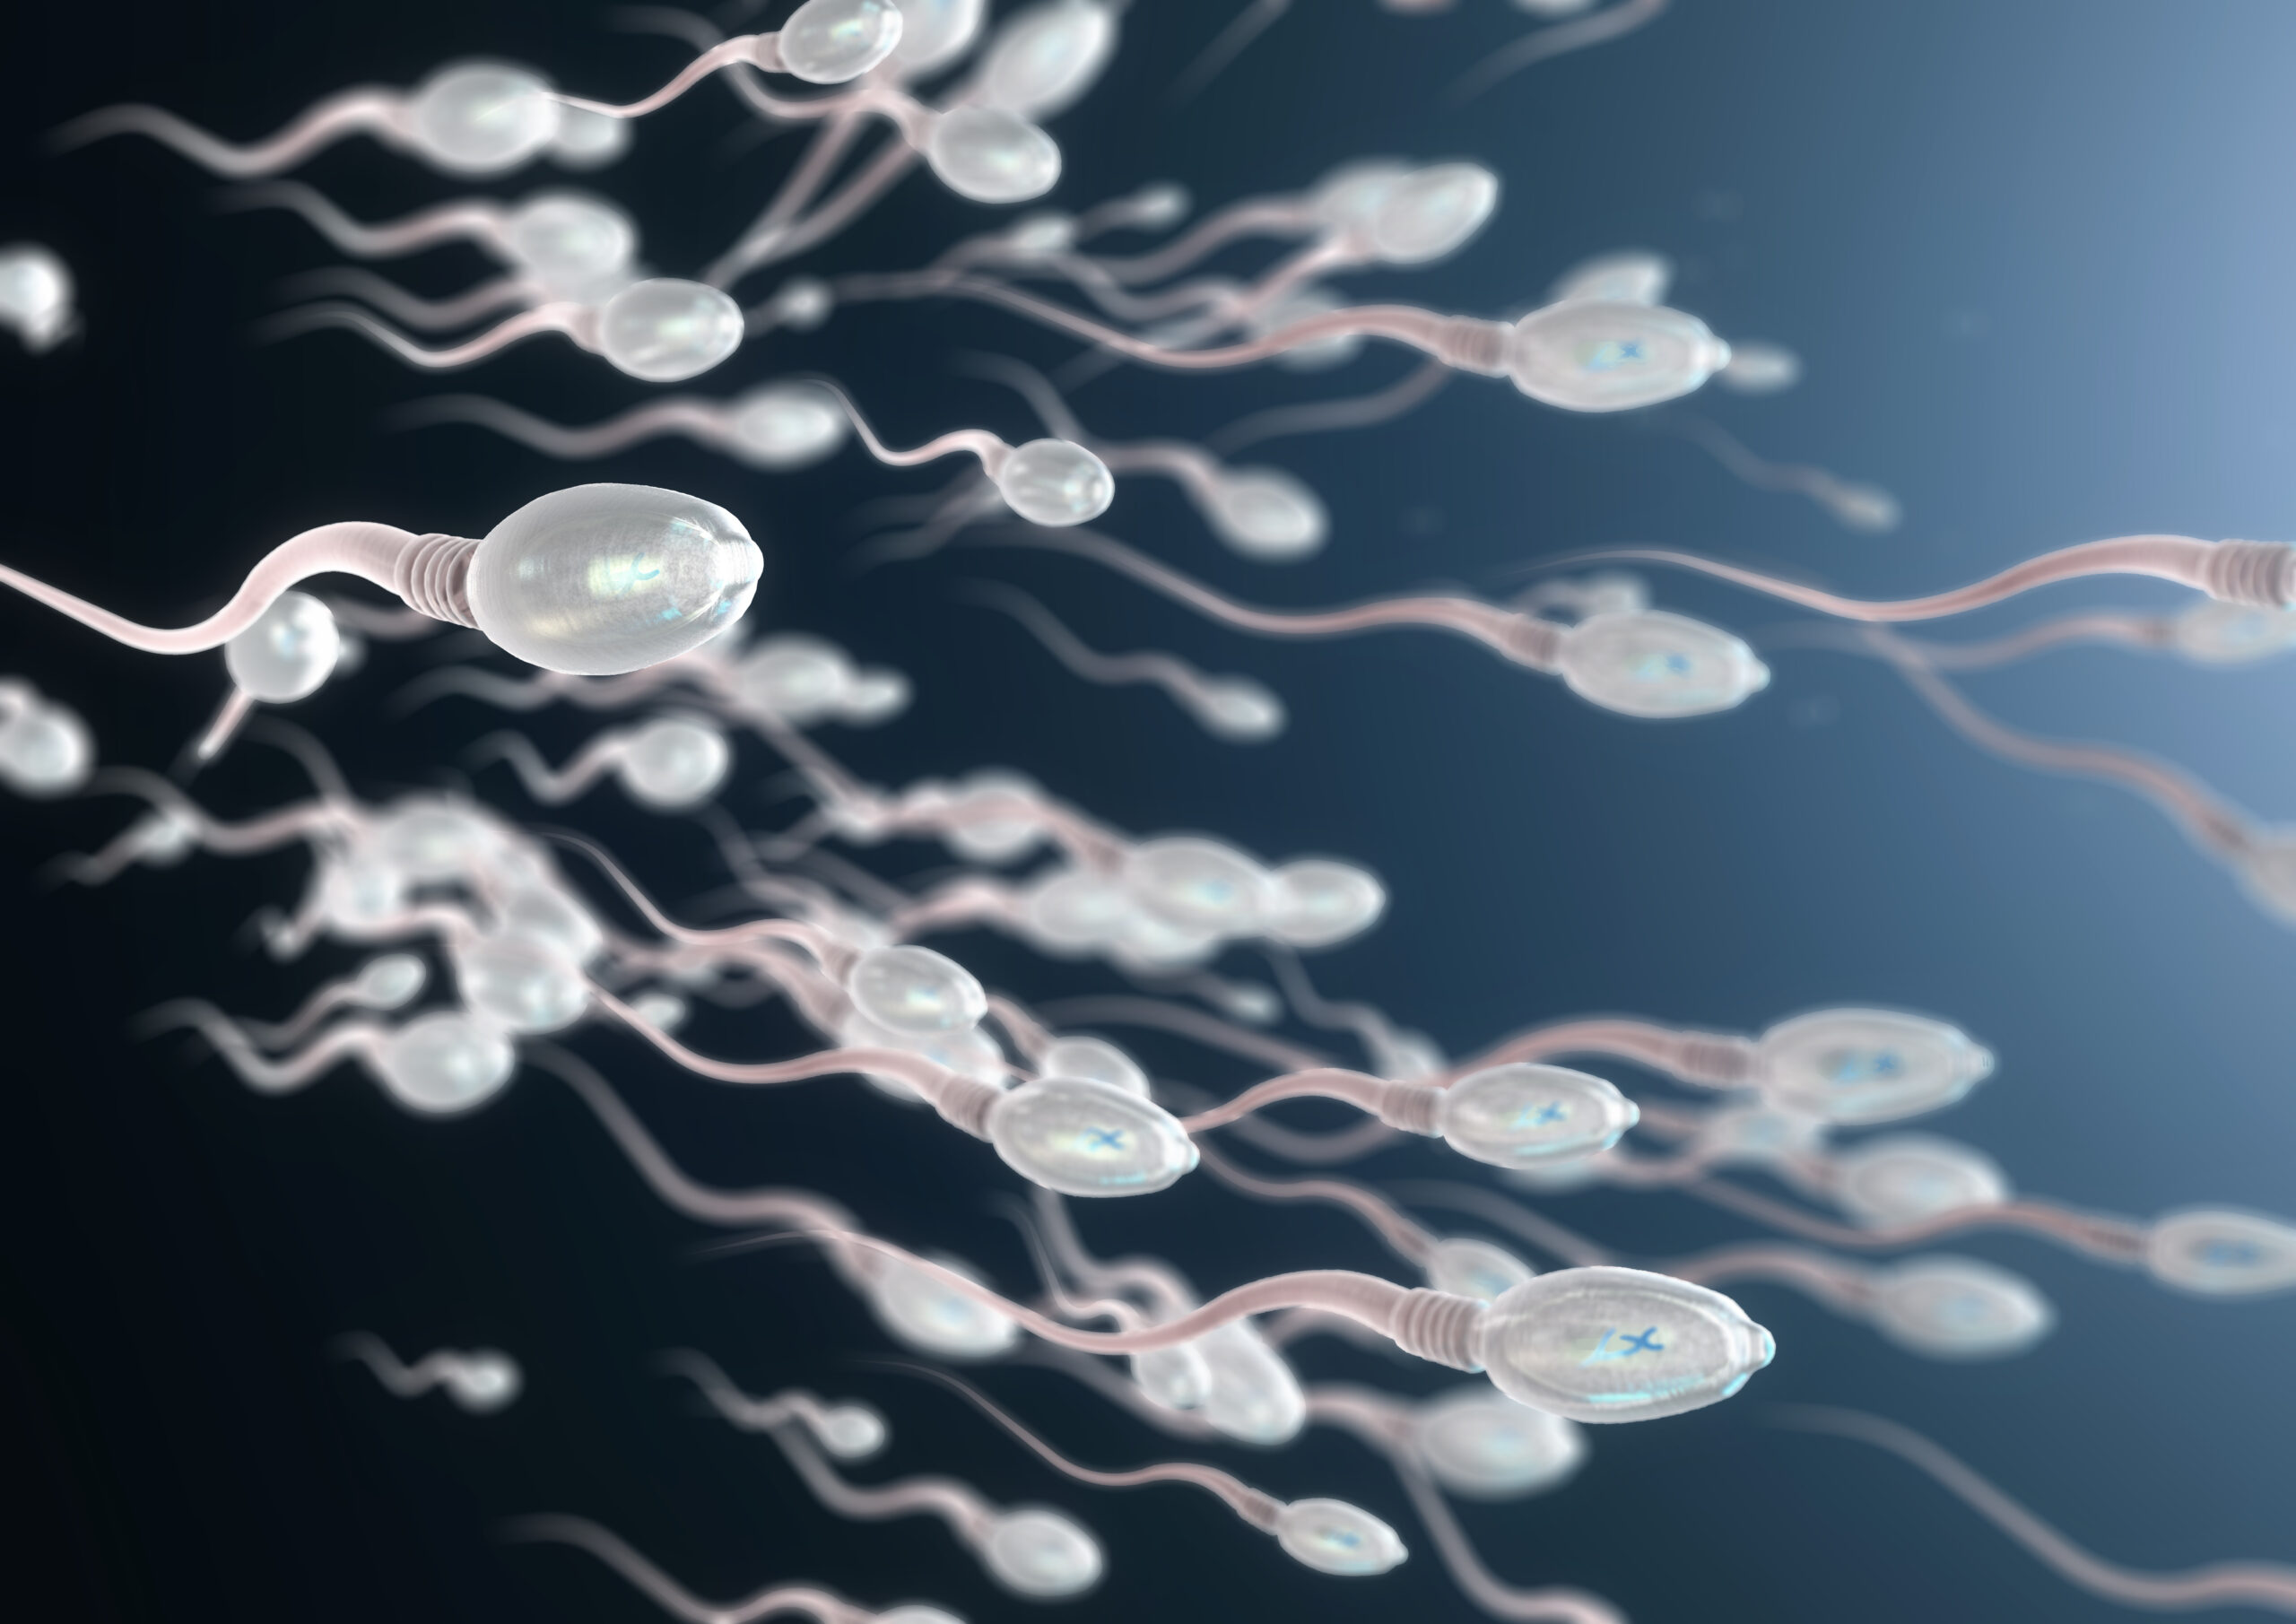 L’inquinamento può influire sulla qualità degli spermatozoi? Cosa dice questo studio